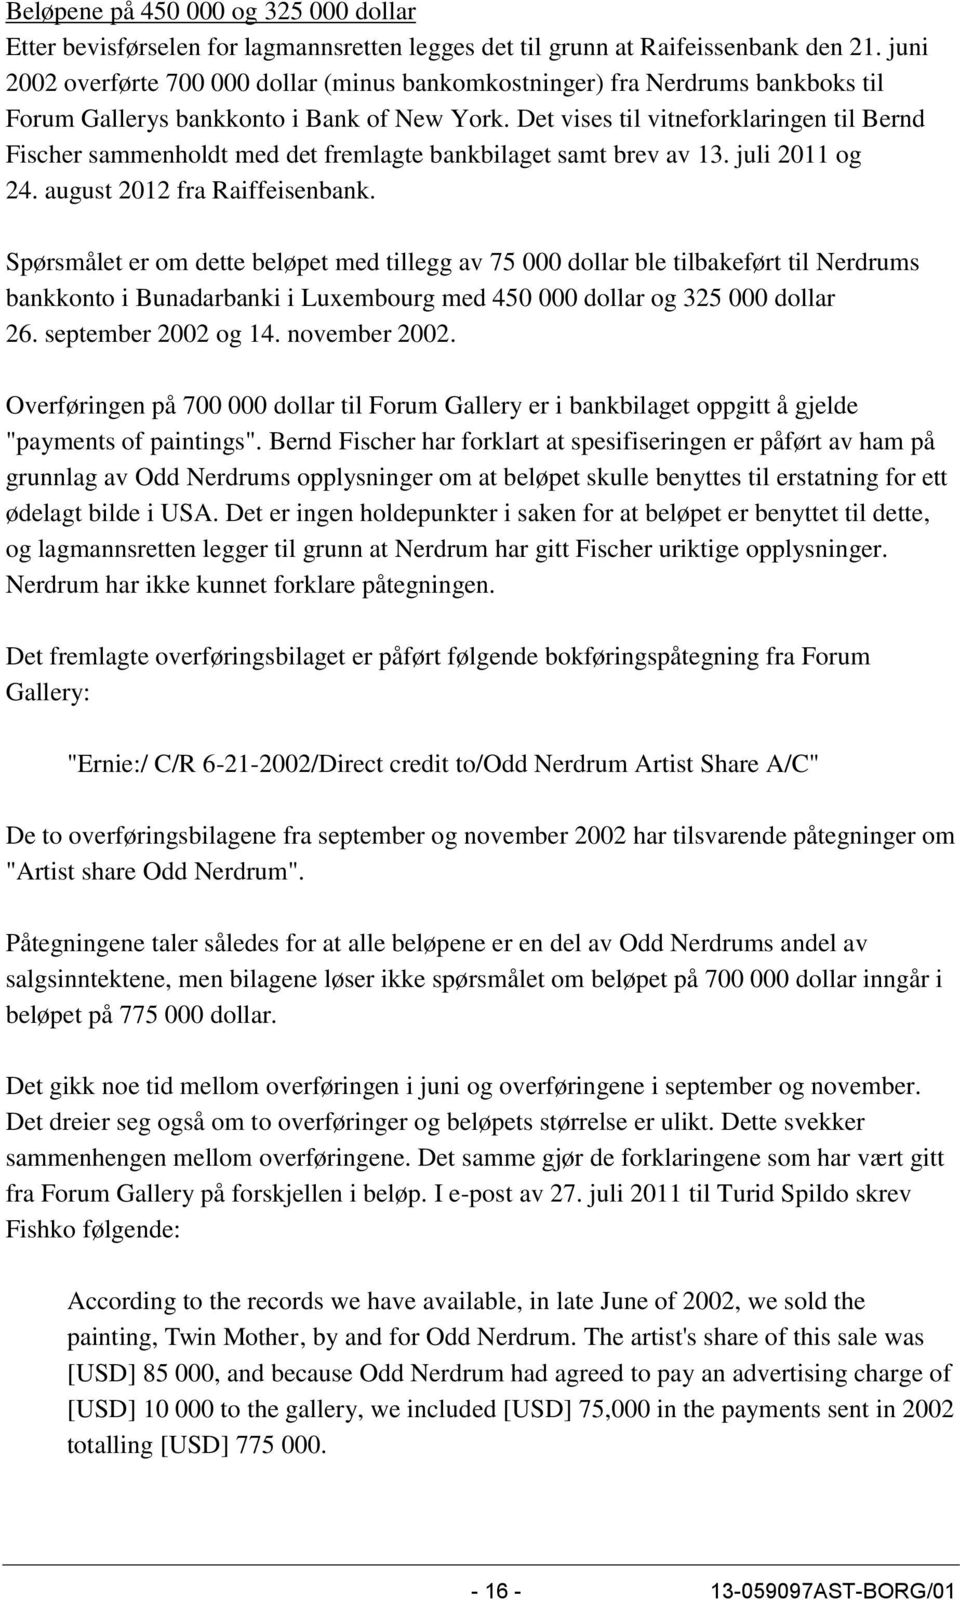 Det vises til vitneforklaringen til Bernd Fischer sammenholdt med det fremlagte bankbilaget samt brev av 13. juli 2011 og 24. august 2012 fra Raiffeisenbank.